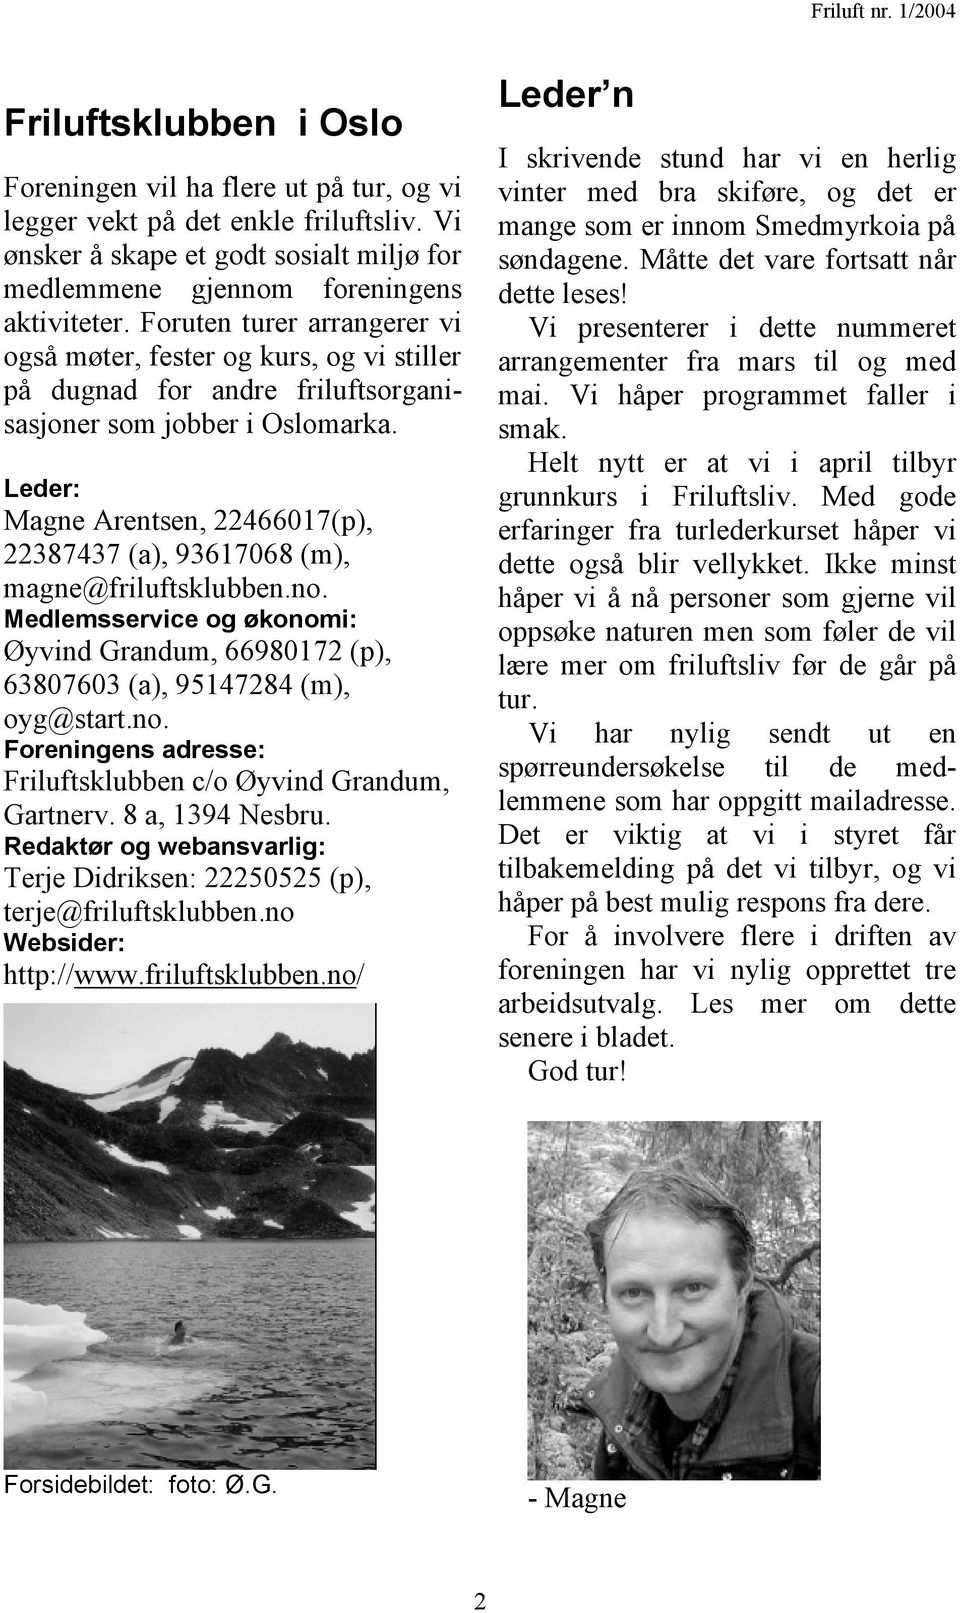 Leder: Magne Arentsen, 22466017(p), 22387437 (a), 93617068 (m), magne@friluftsklubben.no. Medlemsservice og økonomi: Øyvind Grandum, 66980172 (p), 63807603 (a), 95147284 (m), oyg@start.no. Foreningens adresse: Friluftsklubben c/o Øyvind Grandum, Gartnerv.